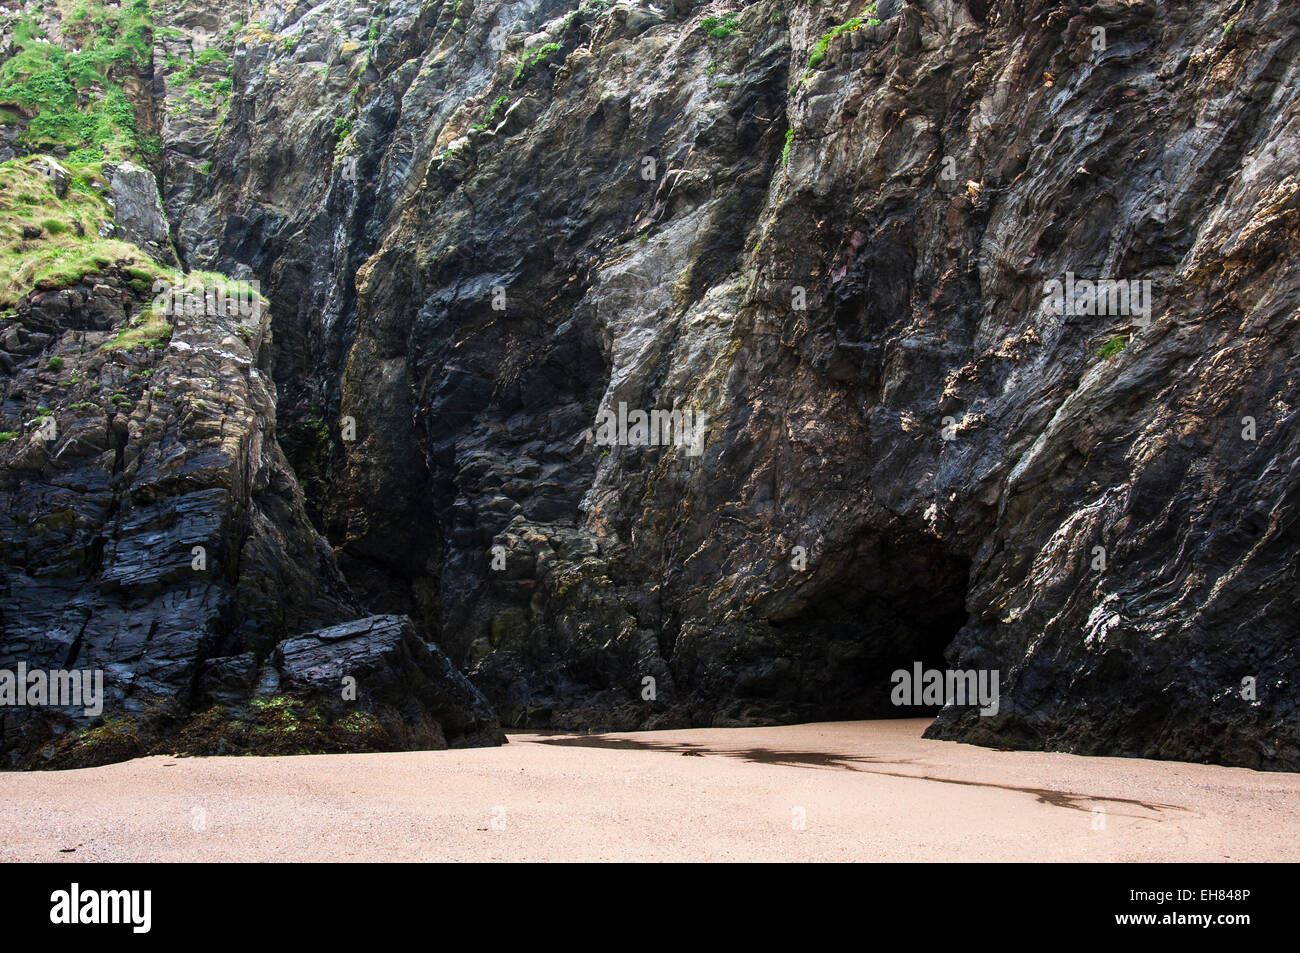 Grotte mystérieuse dans les falaises à plage de Crantock près de Newquay en Cornouailles, Angleterre. Banque D'Images